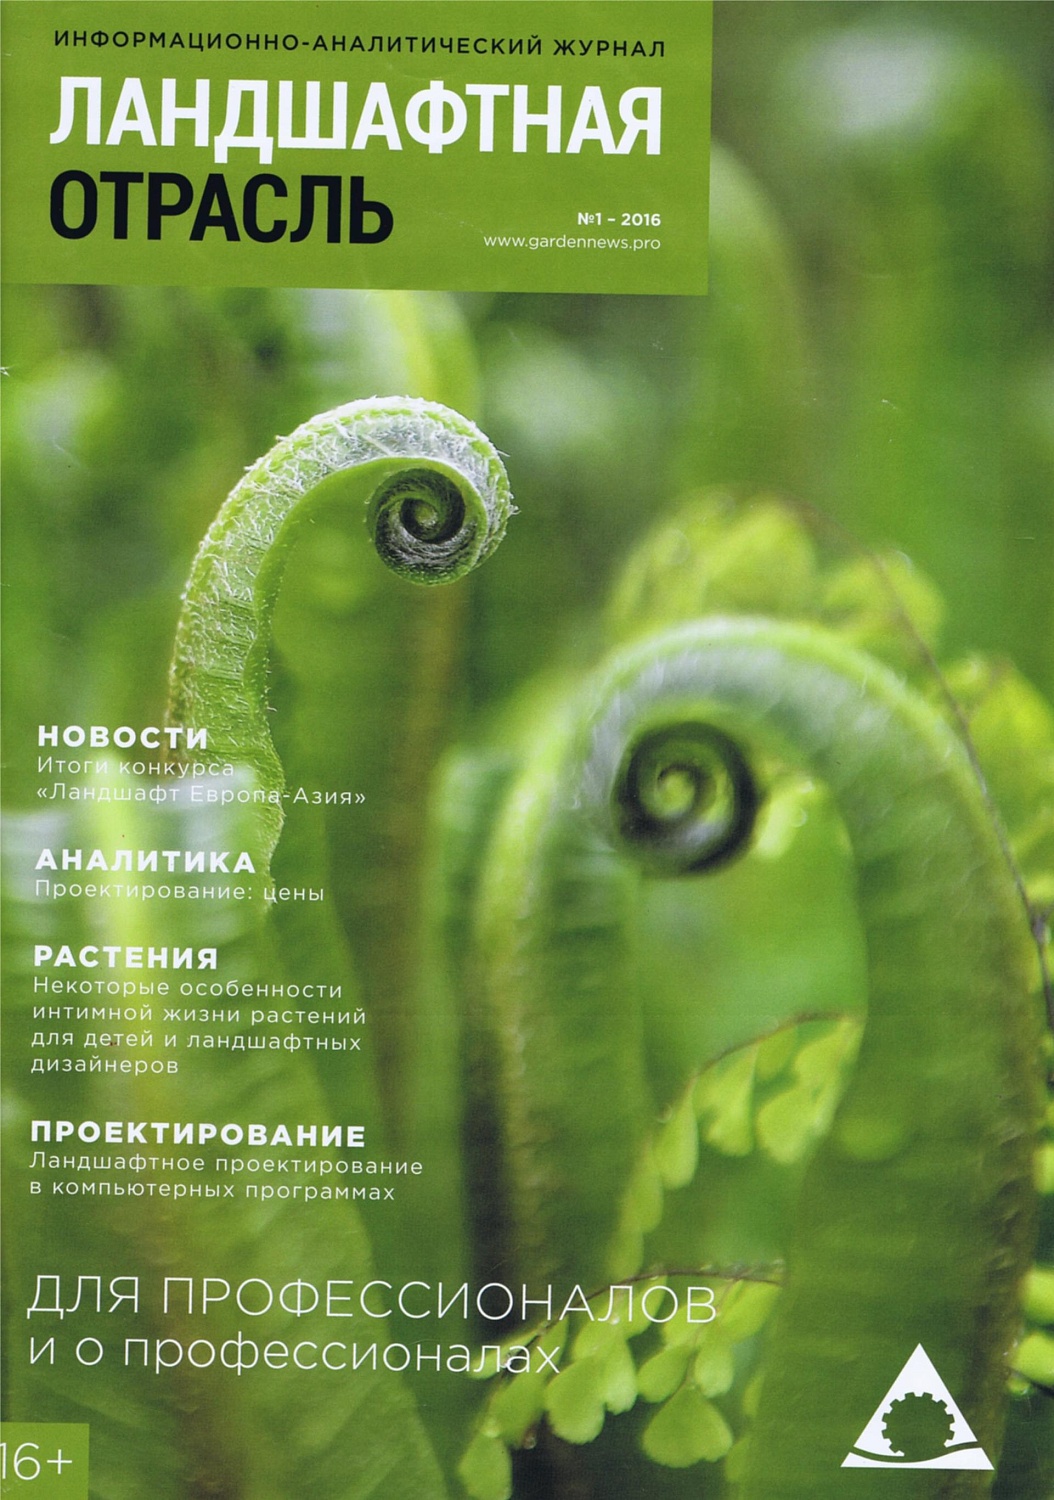 Журнал "Ландшафтная архитектура" - "Подмосковье. Сад холмов" 2016